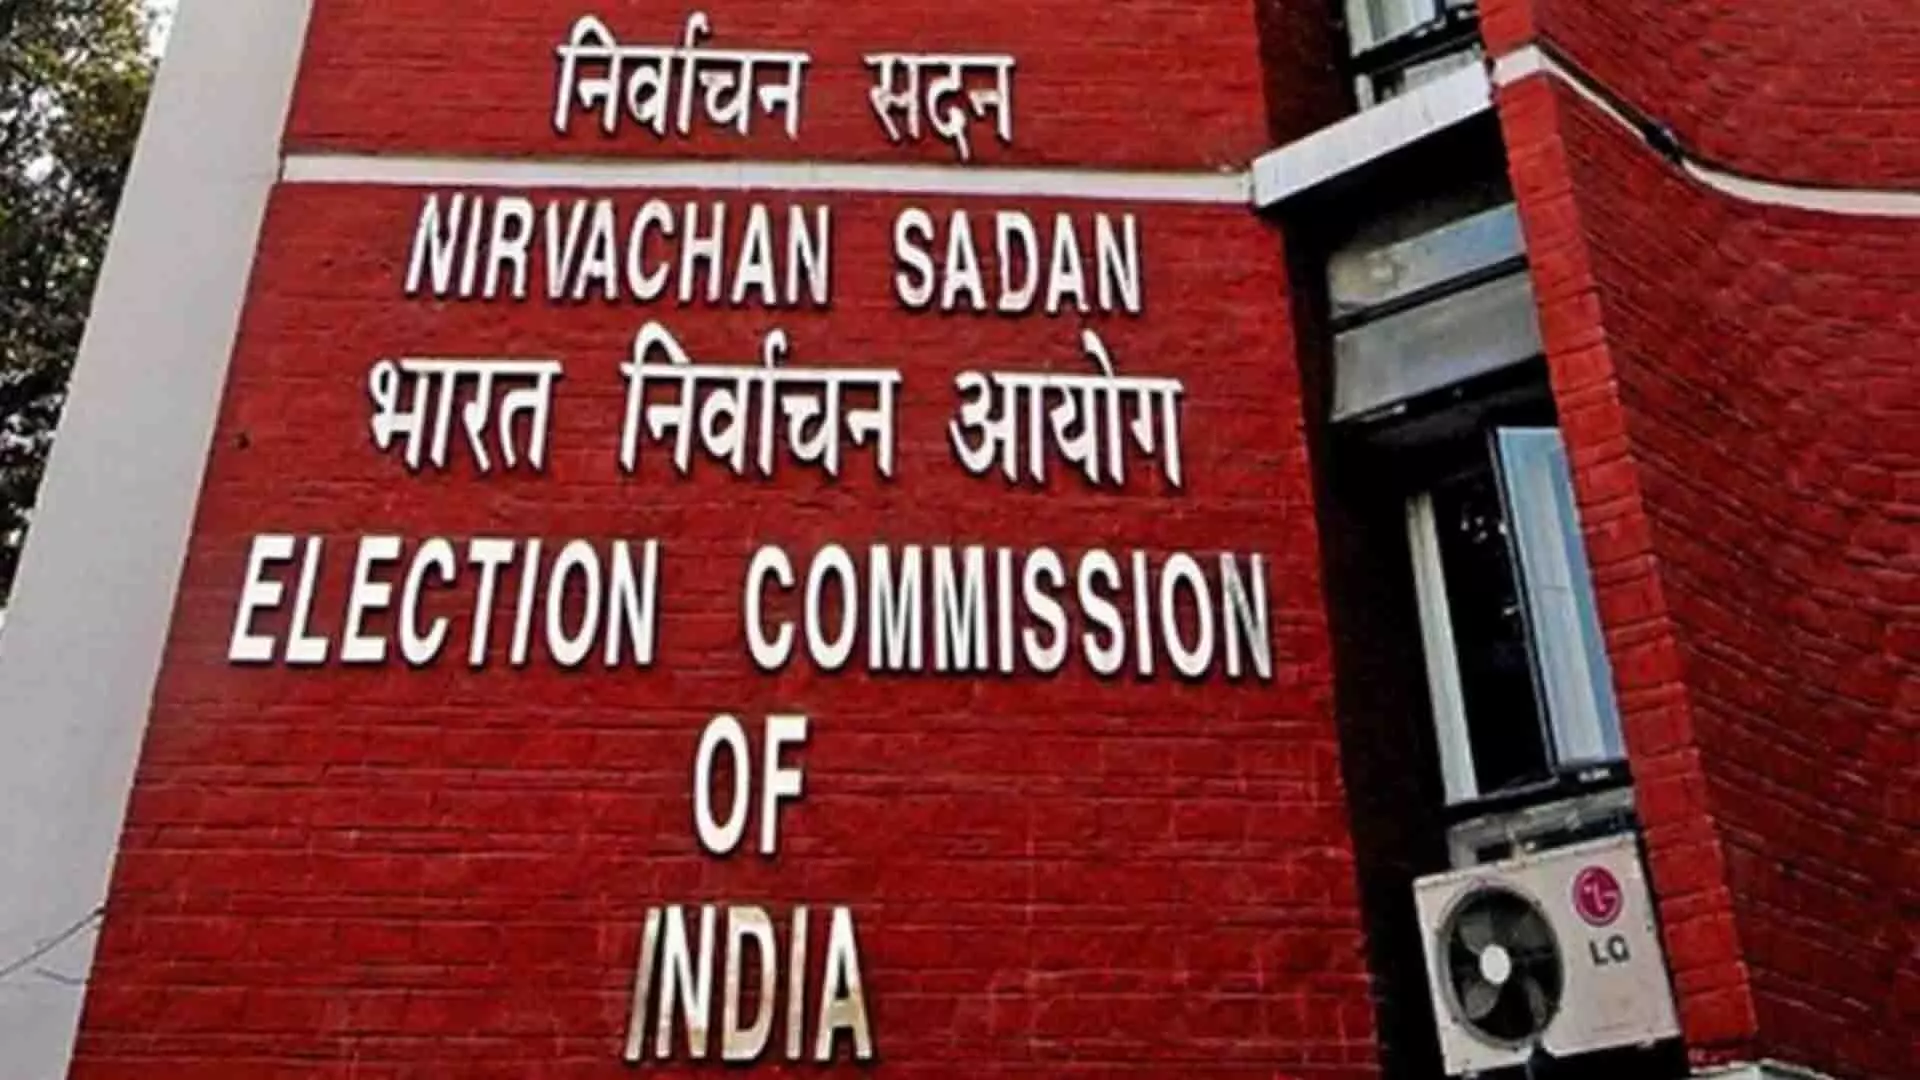 भारत निर्वाचन आयोग द्वारा बस्तर संसदीय क्षेत्र के लिए मतदान का समय निर्धारित